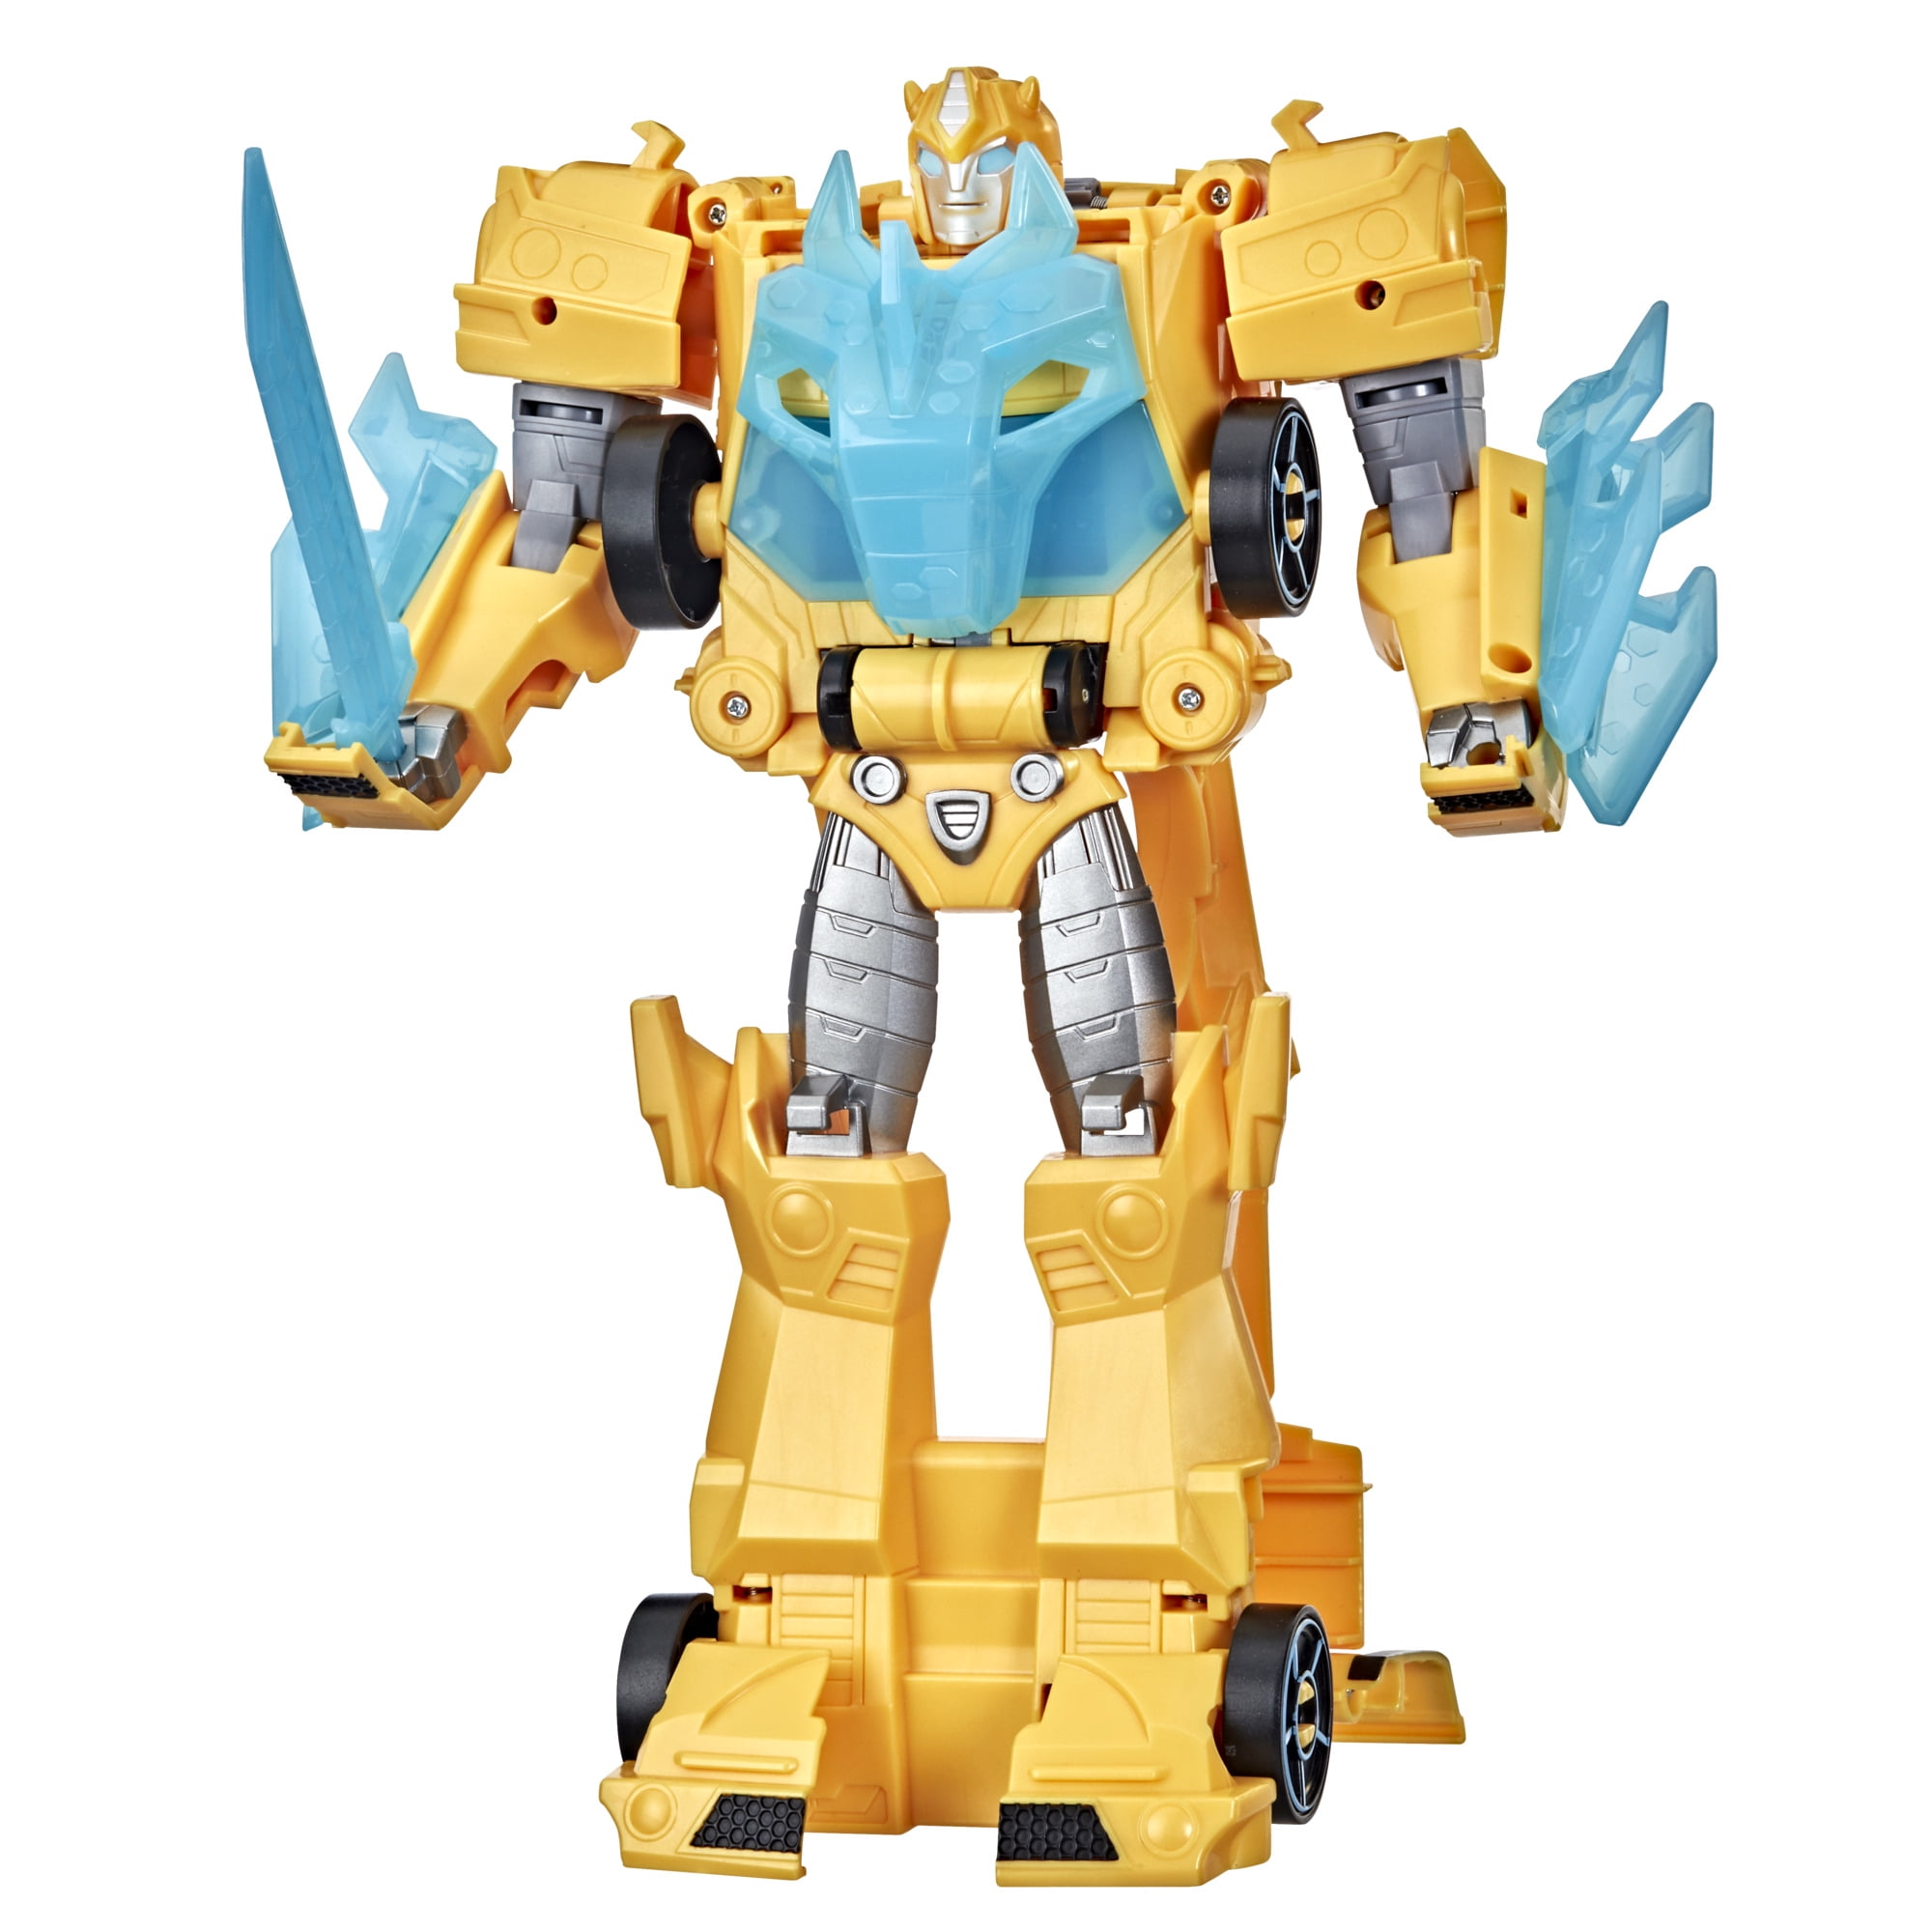 Transformers Car Autobots Vehicle Decepticons Robots 12 PCS Action Figure Toys 